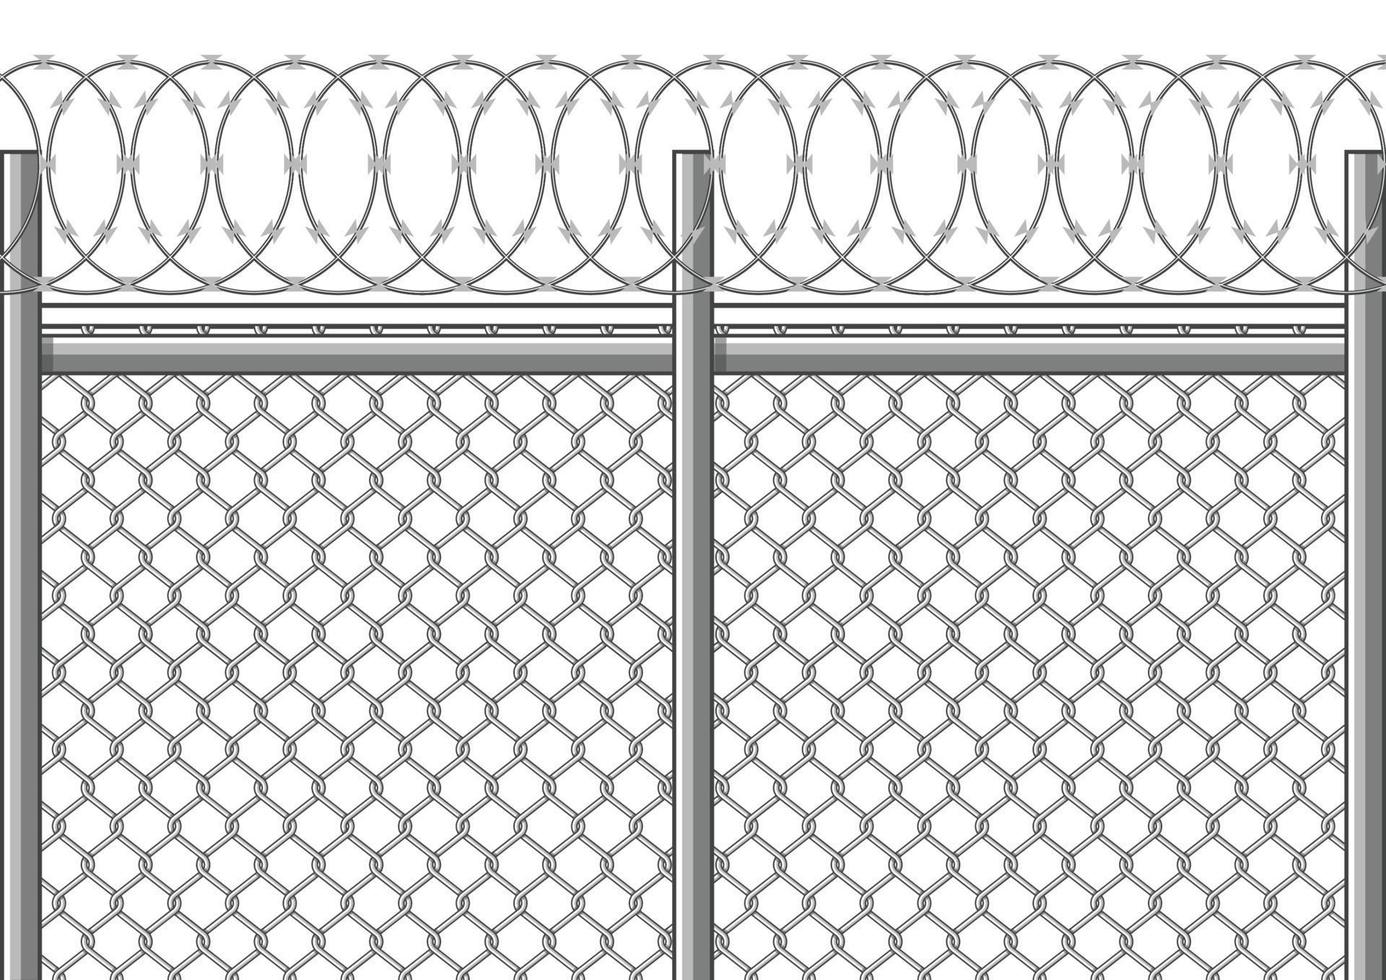 des clôtures en fil de fer barbelé interdisent l'entrée et la sortie. vecteur